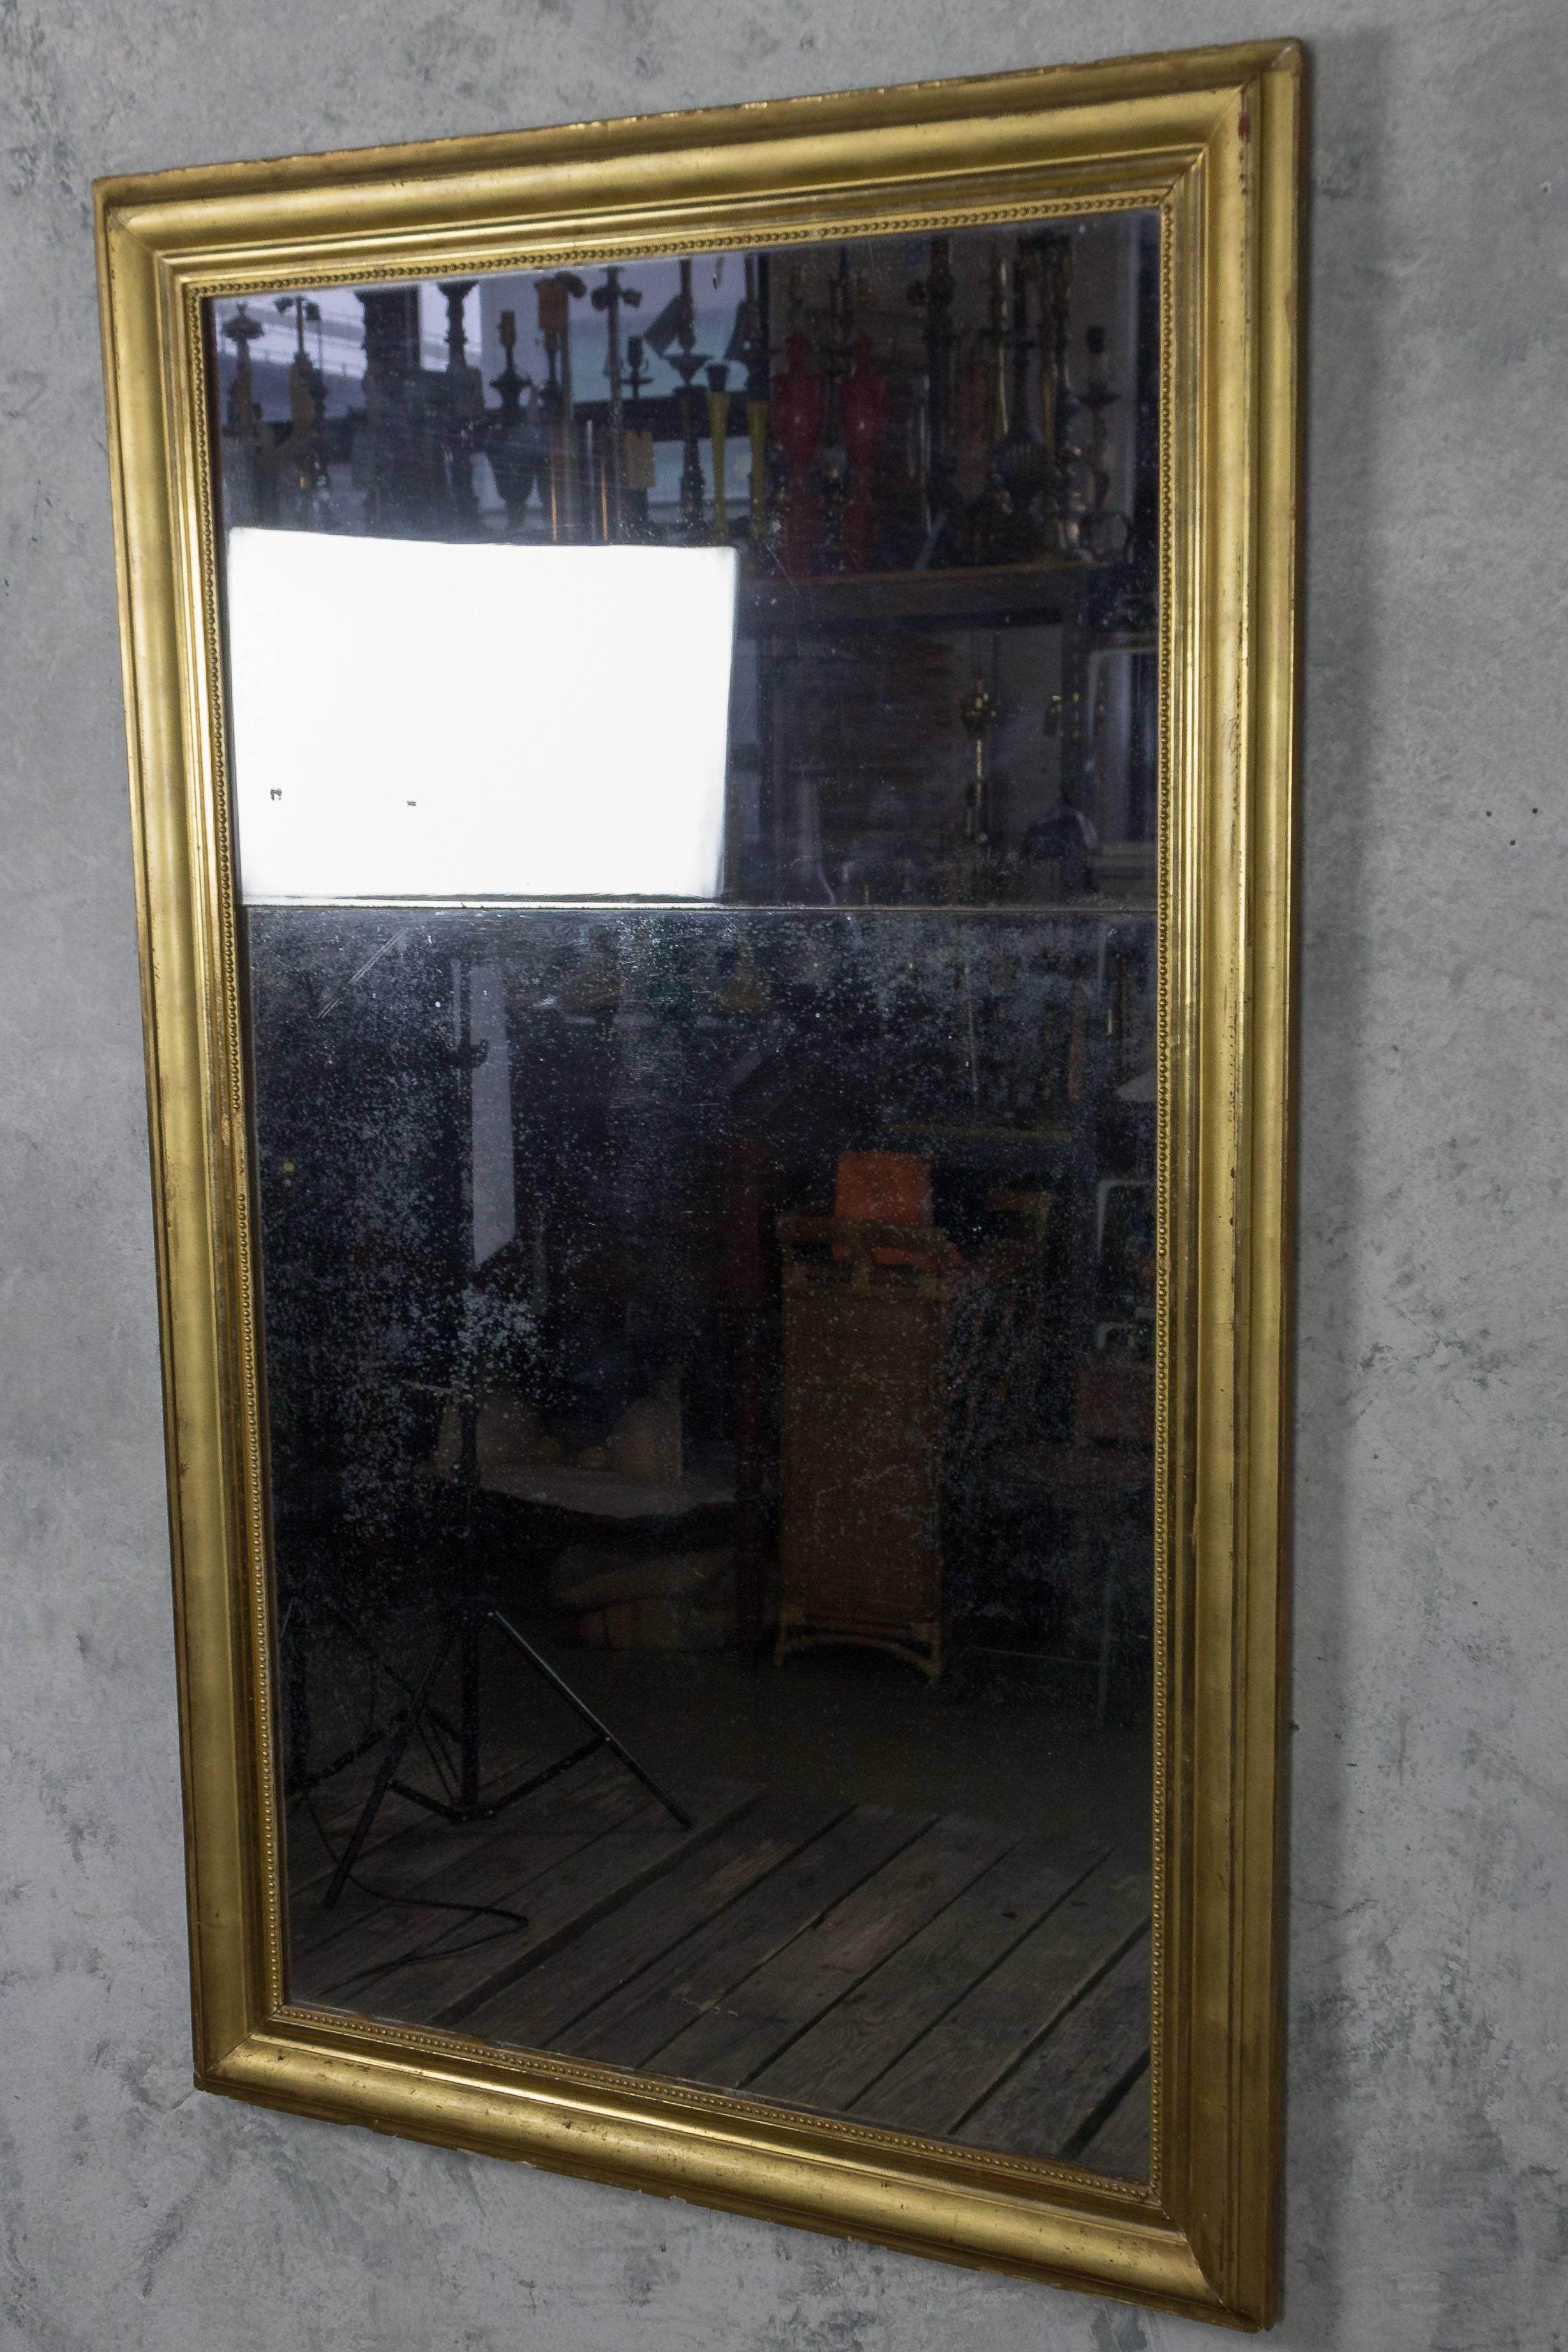 Grand miroir au mercure superposé de la fin du XVIIIe siècle dans un cadre doré. Bon état, usure appropriée à l'âge.

Réf. : DM1203-33

Dimensions : 63 